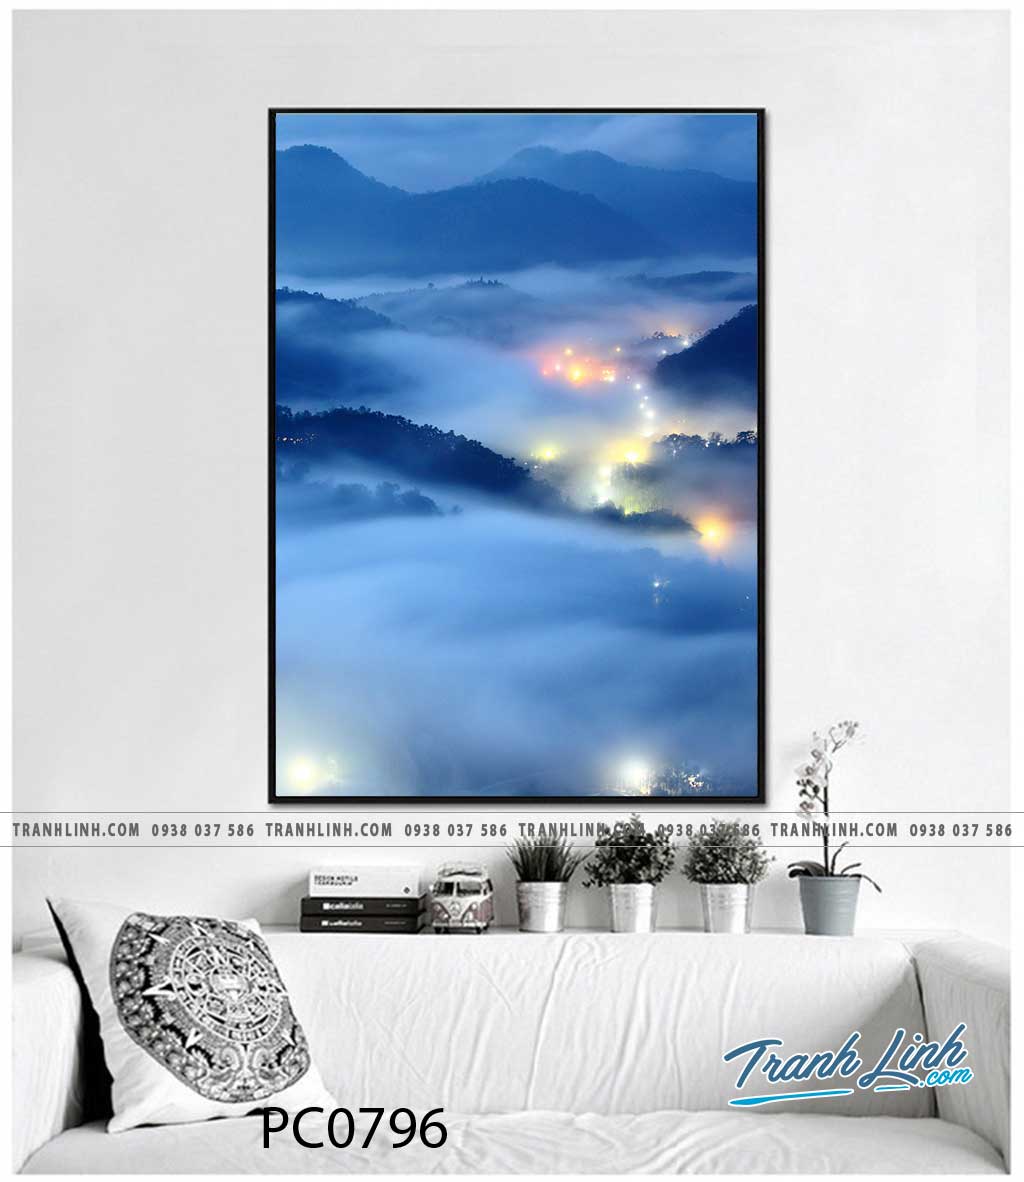 Bộ Tranh Canvas Phong Cảnh Mây Núi đẹp - PC0796 - Tranh Linh